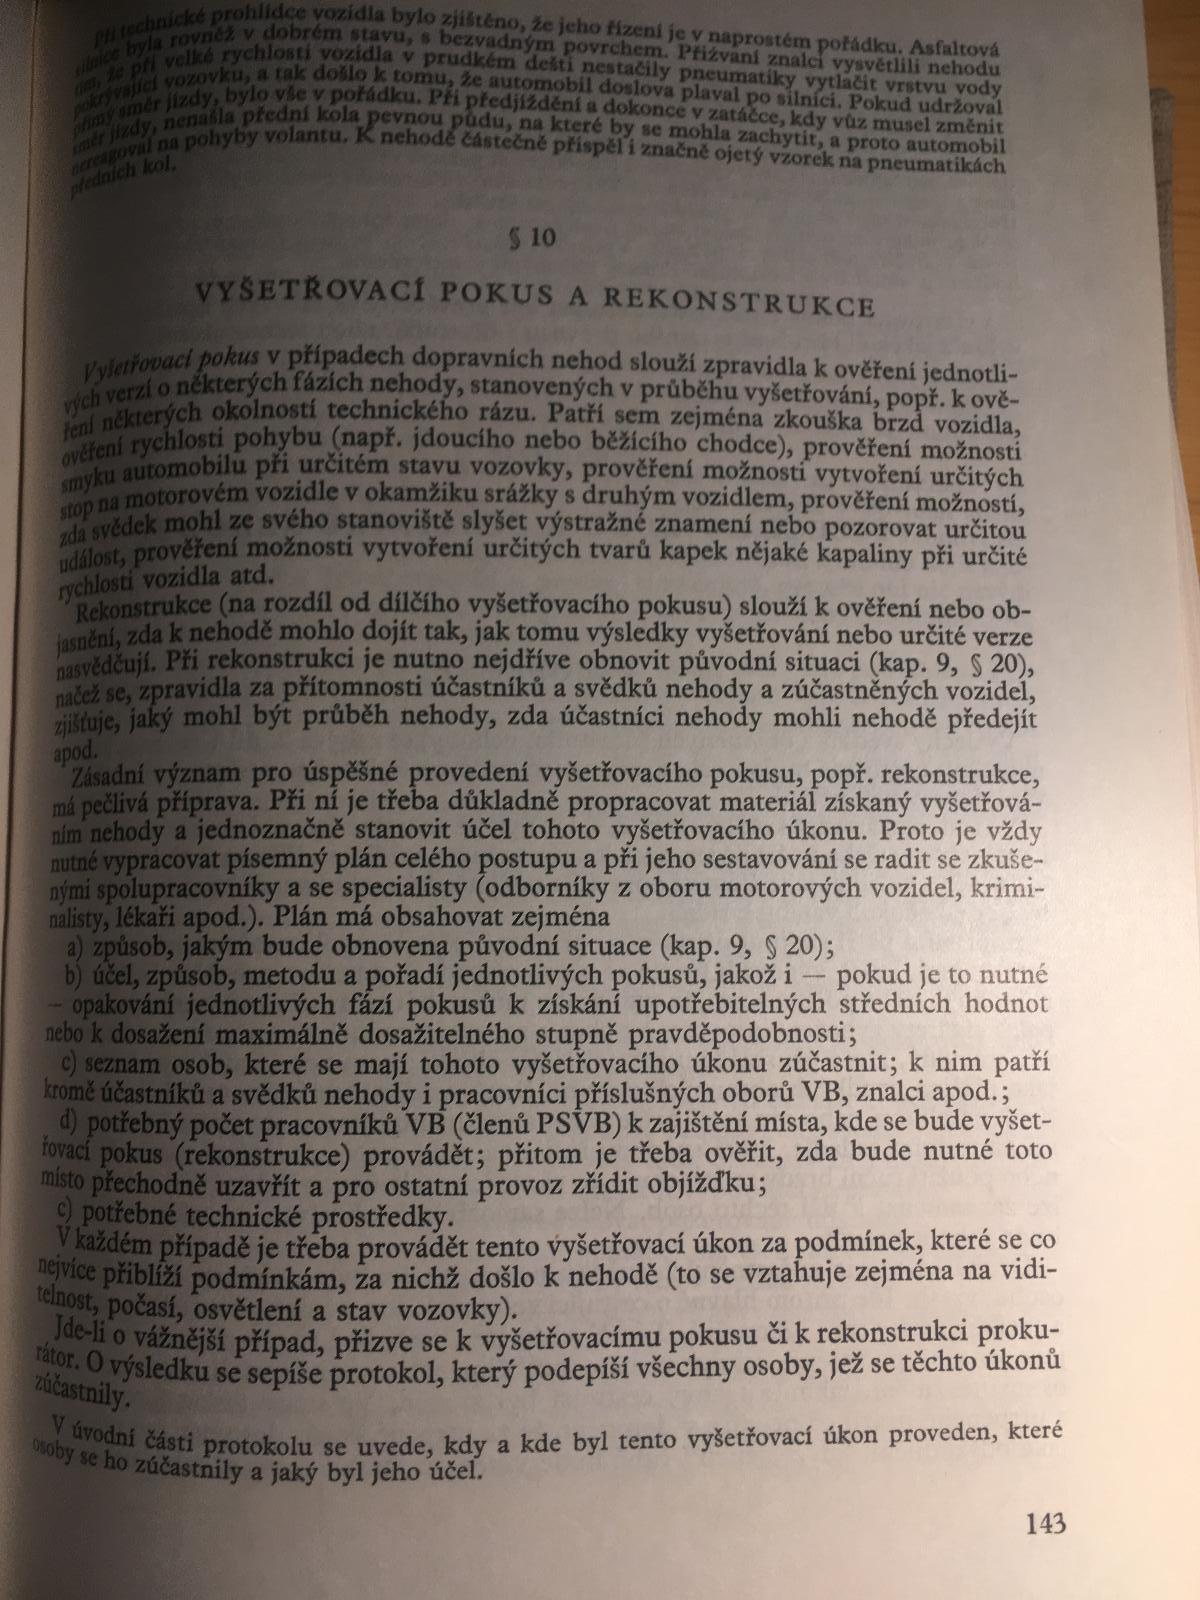 Učebnice kriminalistiky 3.díl 1966*VB*SNB - Sběratelství